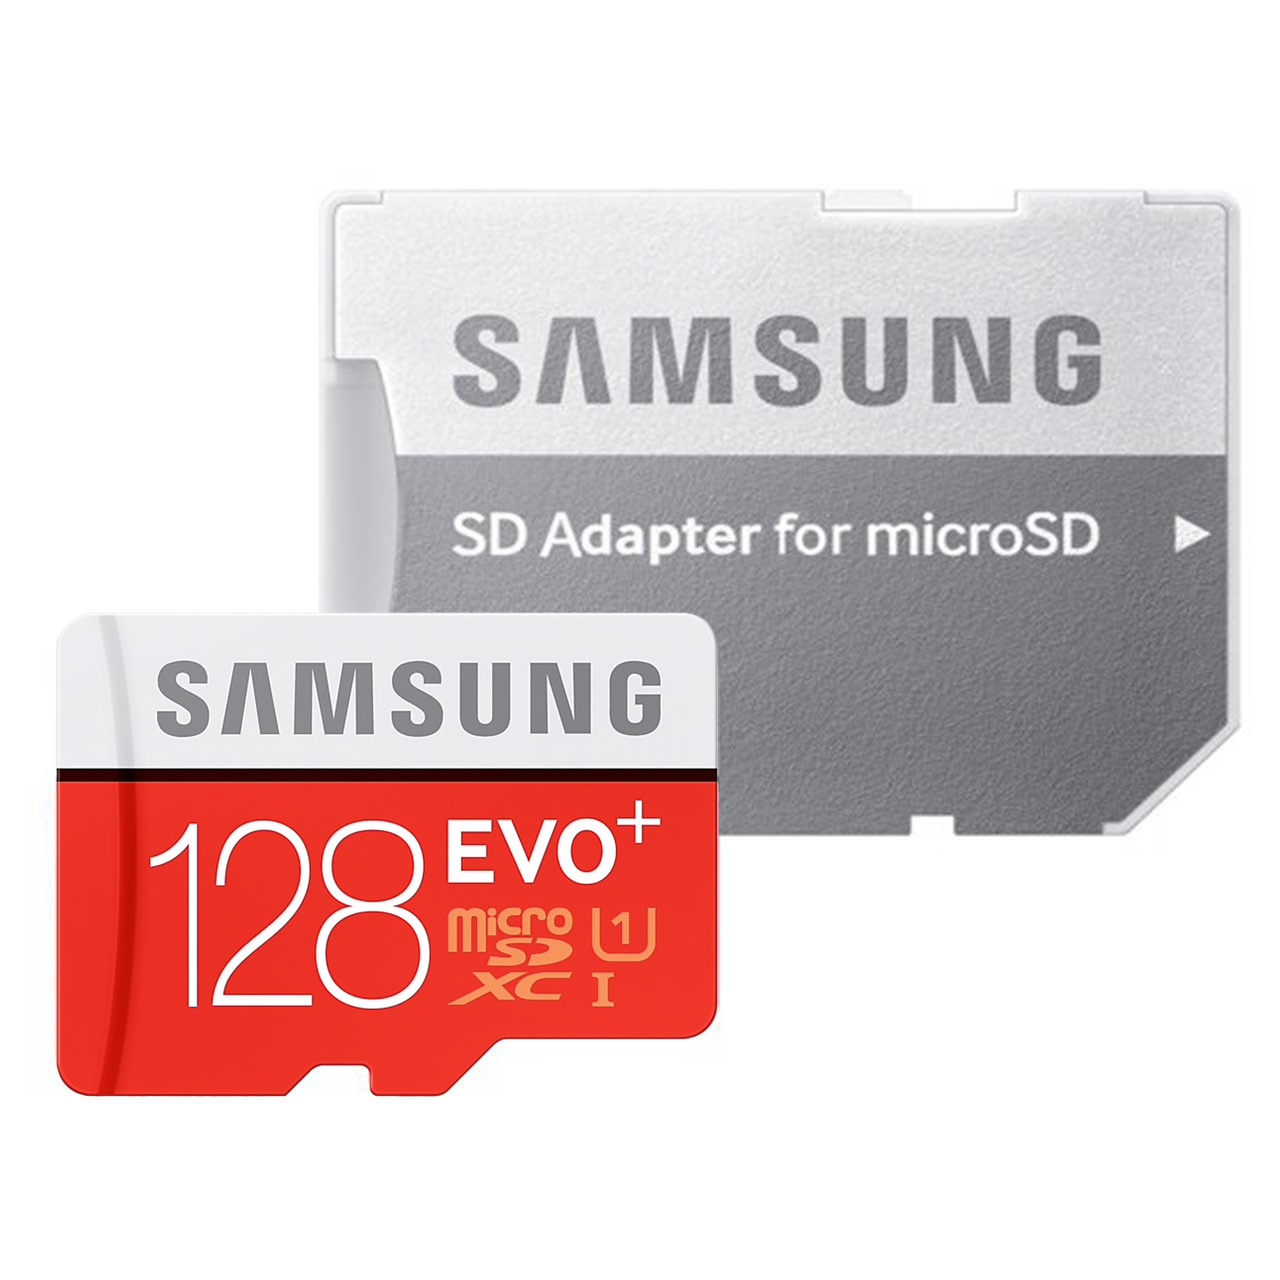 کارت حافظه microSDXC مدل Evo Plus کلاس 10 استاندارد UHS-I U1 سرعت 80MBps ظرفیت 128 گیگابایت به همراه آداپتور SD